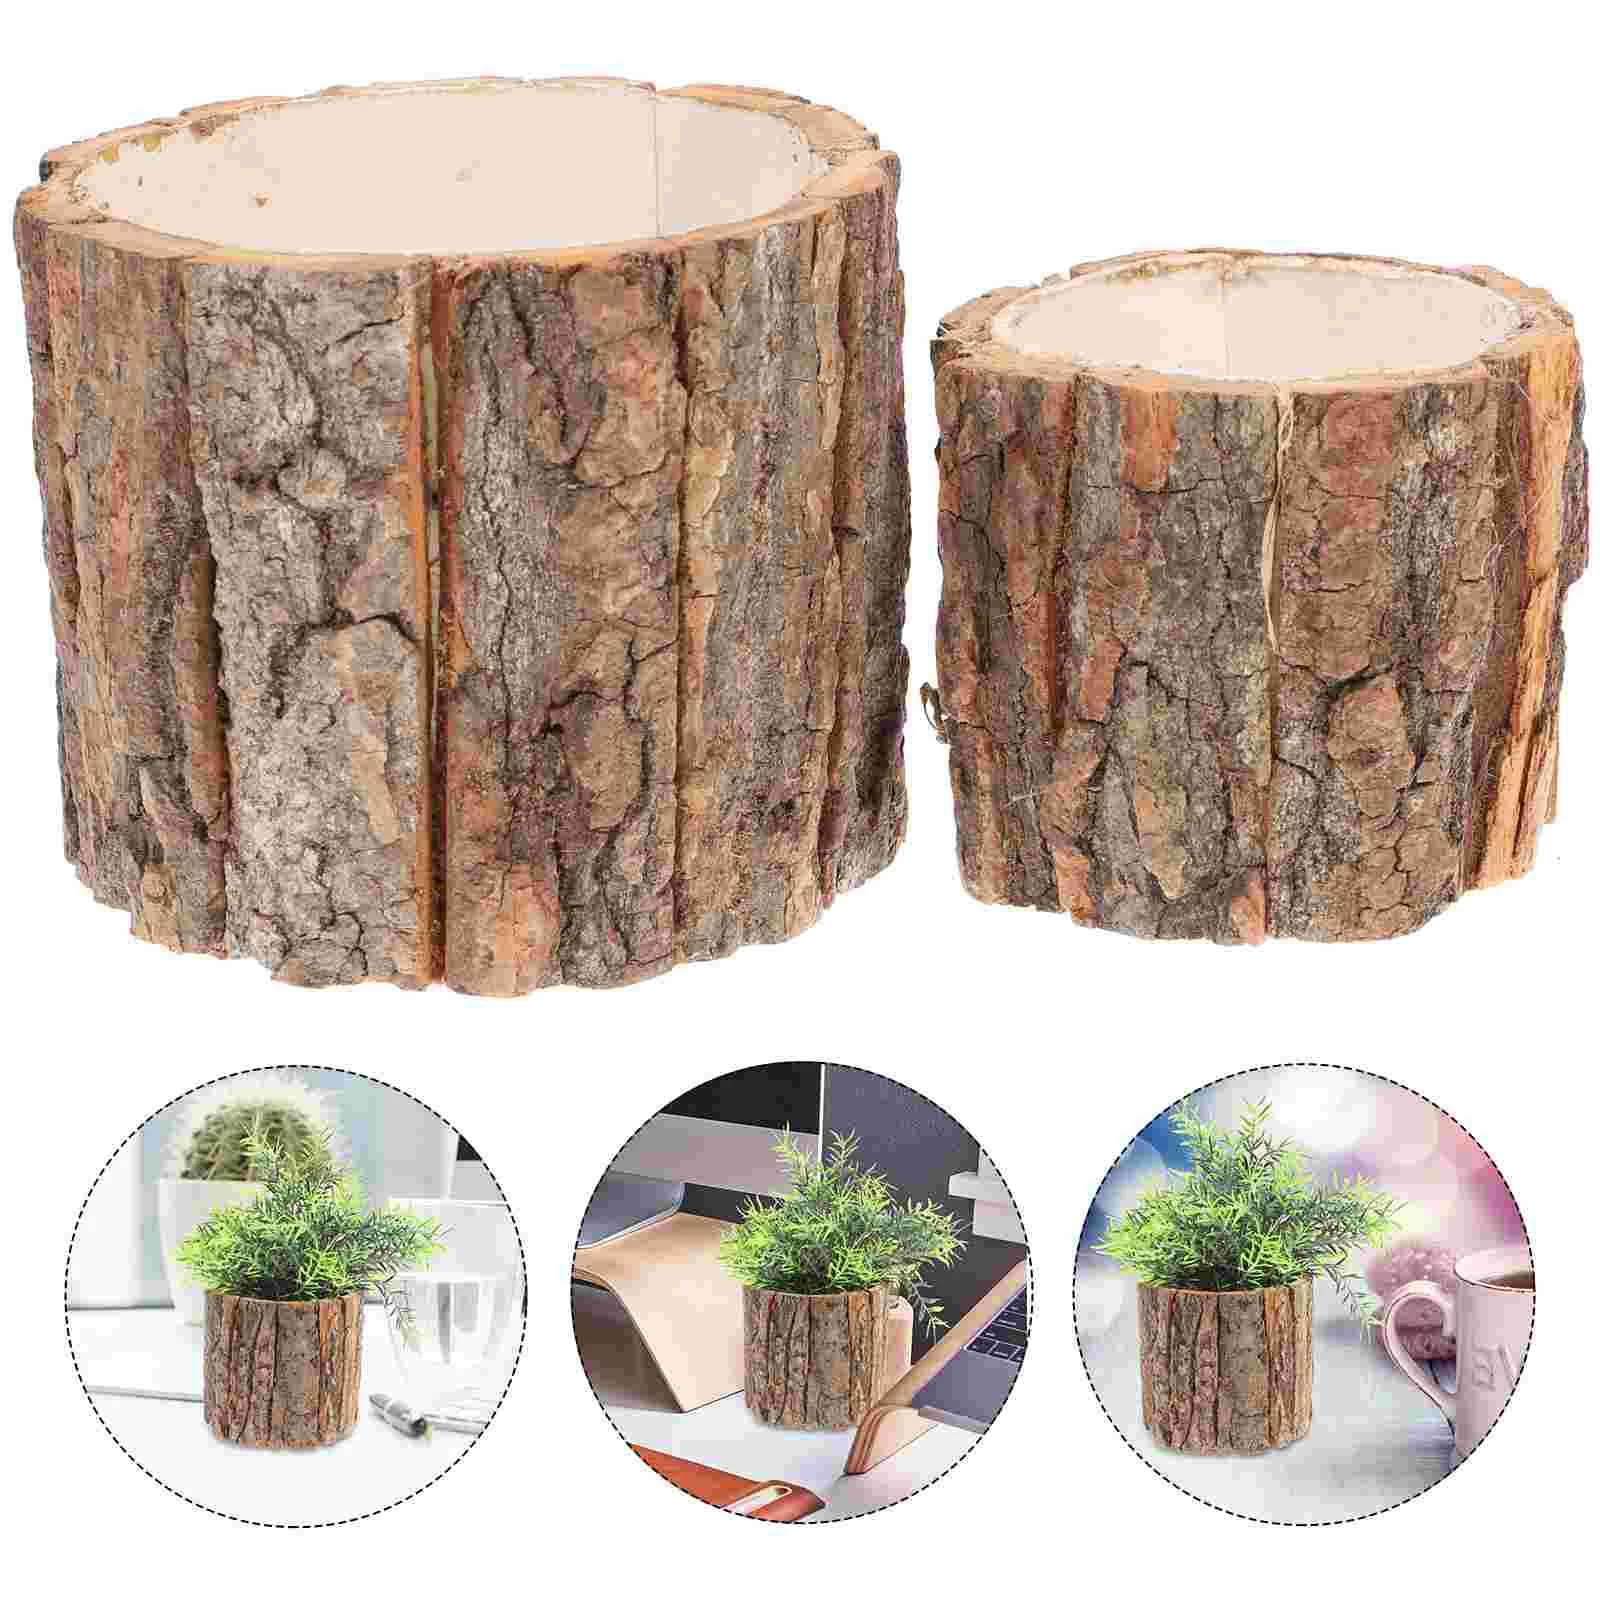 

2 Pcs Wooden Planter Stump Pot Outdoor Pots Bonsai Planter Pots Vintage Decor Floral Bark Bucket Decorate Dry Flower Vase